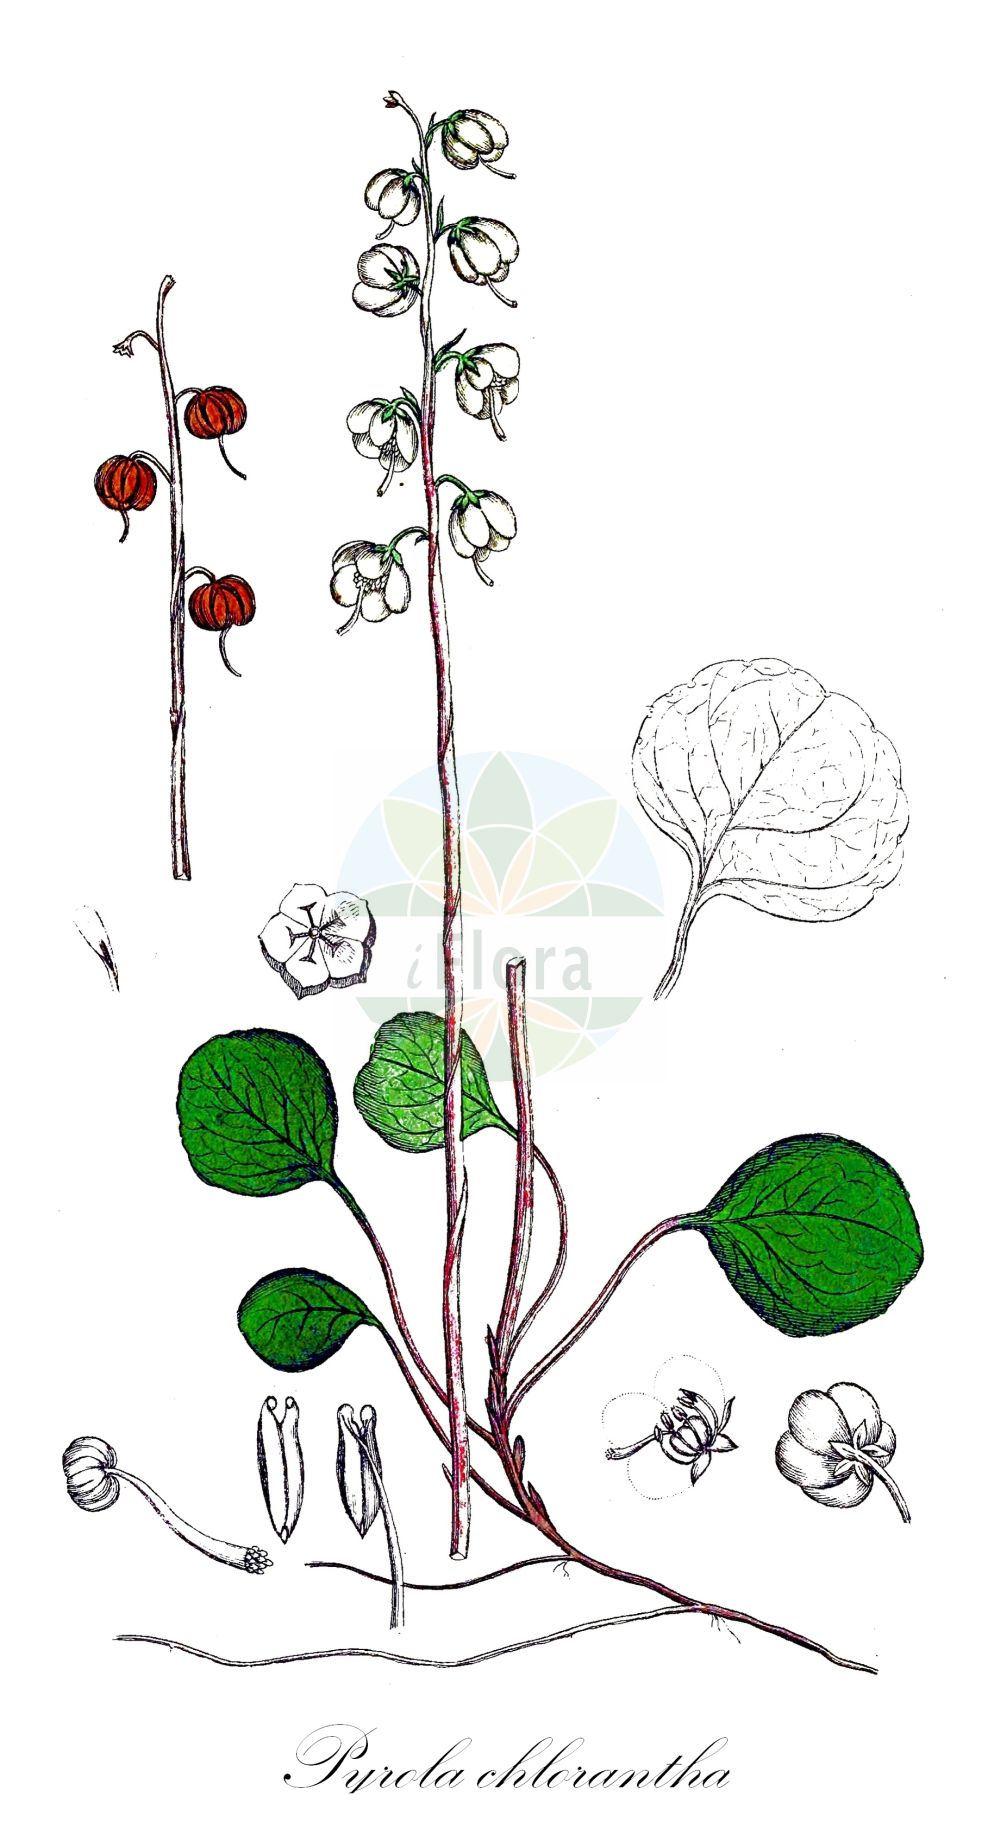 Historische Abbildung von Pyrola chlorantha (Grünliches Wintergrün - Green-flowered Wintergreen). Das Bild zeigt Blatt, Bluete, Frucht und Same. ---- Historical Drawing of Pyrola chlorantha (Grünliches Wintergrün - Green-flowered Wintergreen). The image is showing leaf, flower, fruit and seed.(Pyrola chlorantha,Grünliches Wintergrün,Green-flowered Wintergreen,Pyrola chlorantha,Pyrola virens,Gruenliches Wintergruen,Green-flowered Wintergreen,Pale-green Wintergreen,Pyrola,Wintergrün,Wintergreen,Ericaceae,Heidekrautgewächse,Heath family,Blatt,Bluete,Frucht,Same,leaf,flower,fruit,seed,Svensk Botanik (Svensk Botanik))